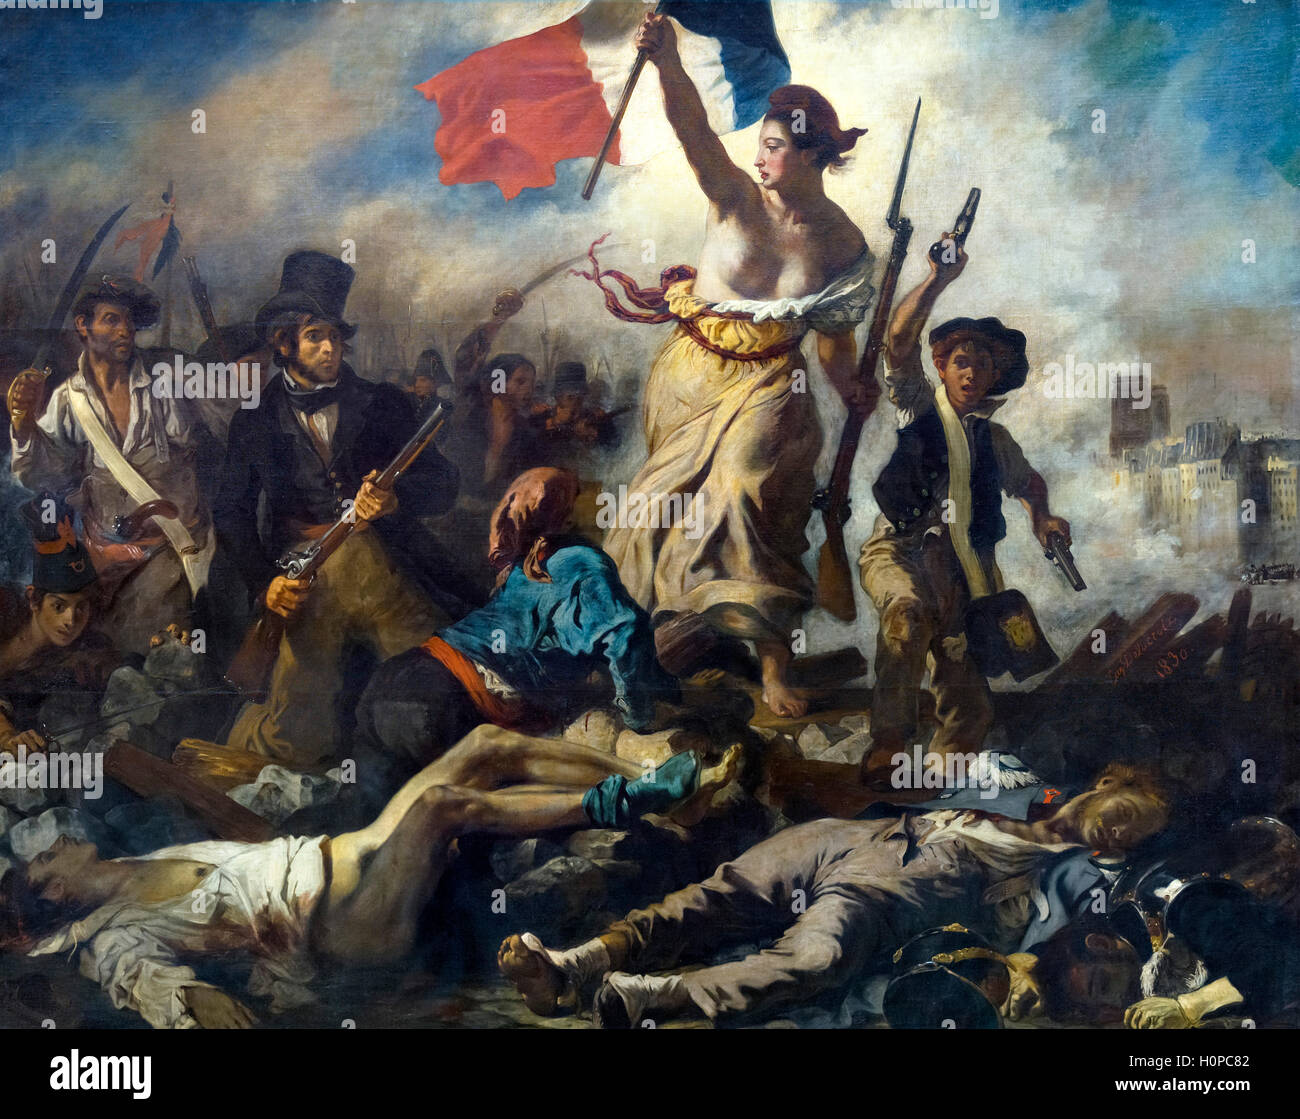 Delacroix, Liberty Leading the People. “La Liberté guidant le peuple” by Eugène Delacroix, oil on canvas, 1830 Stock Photo